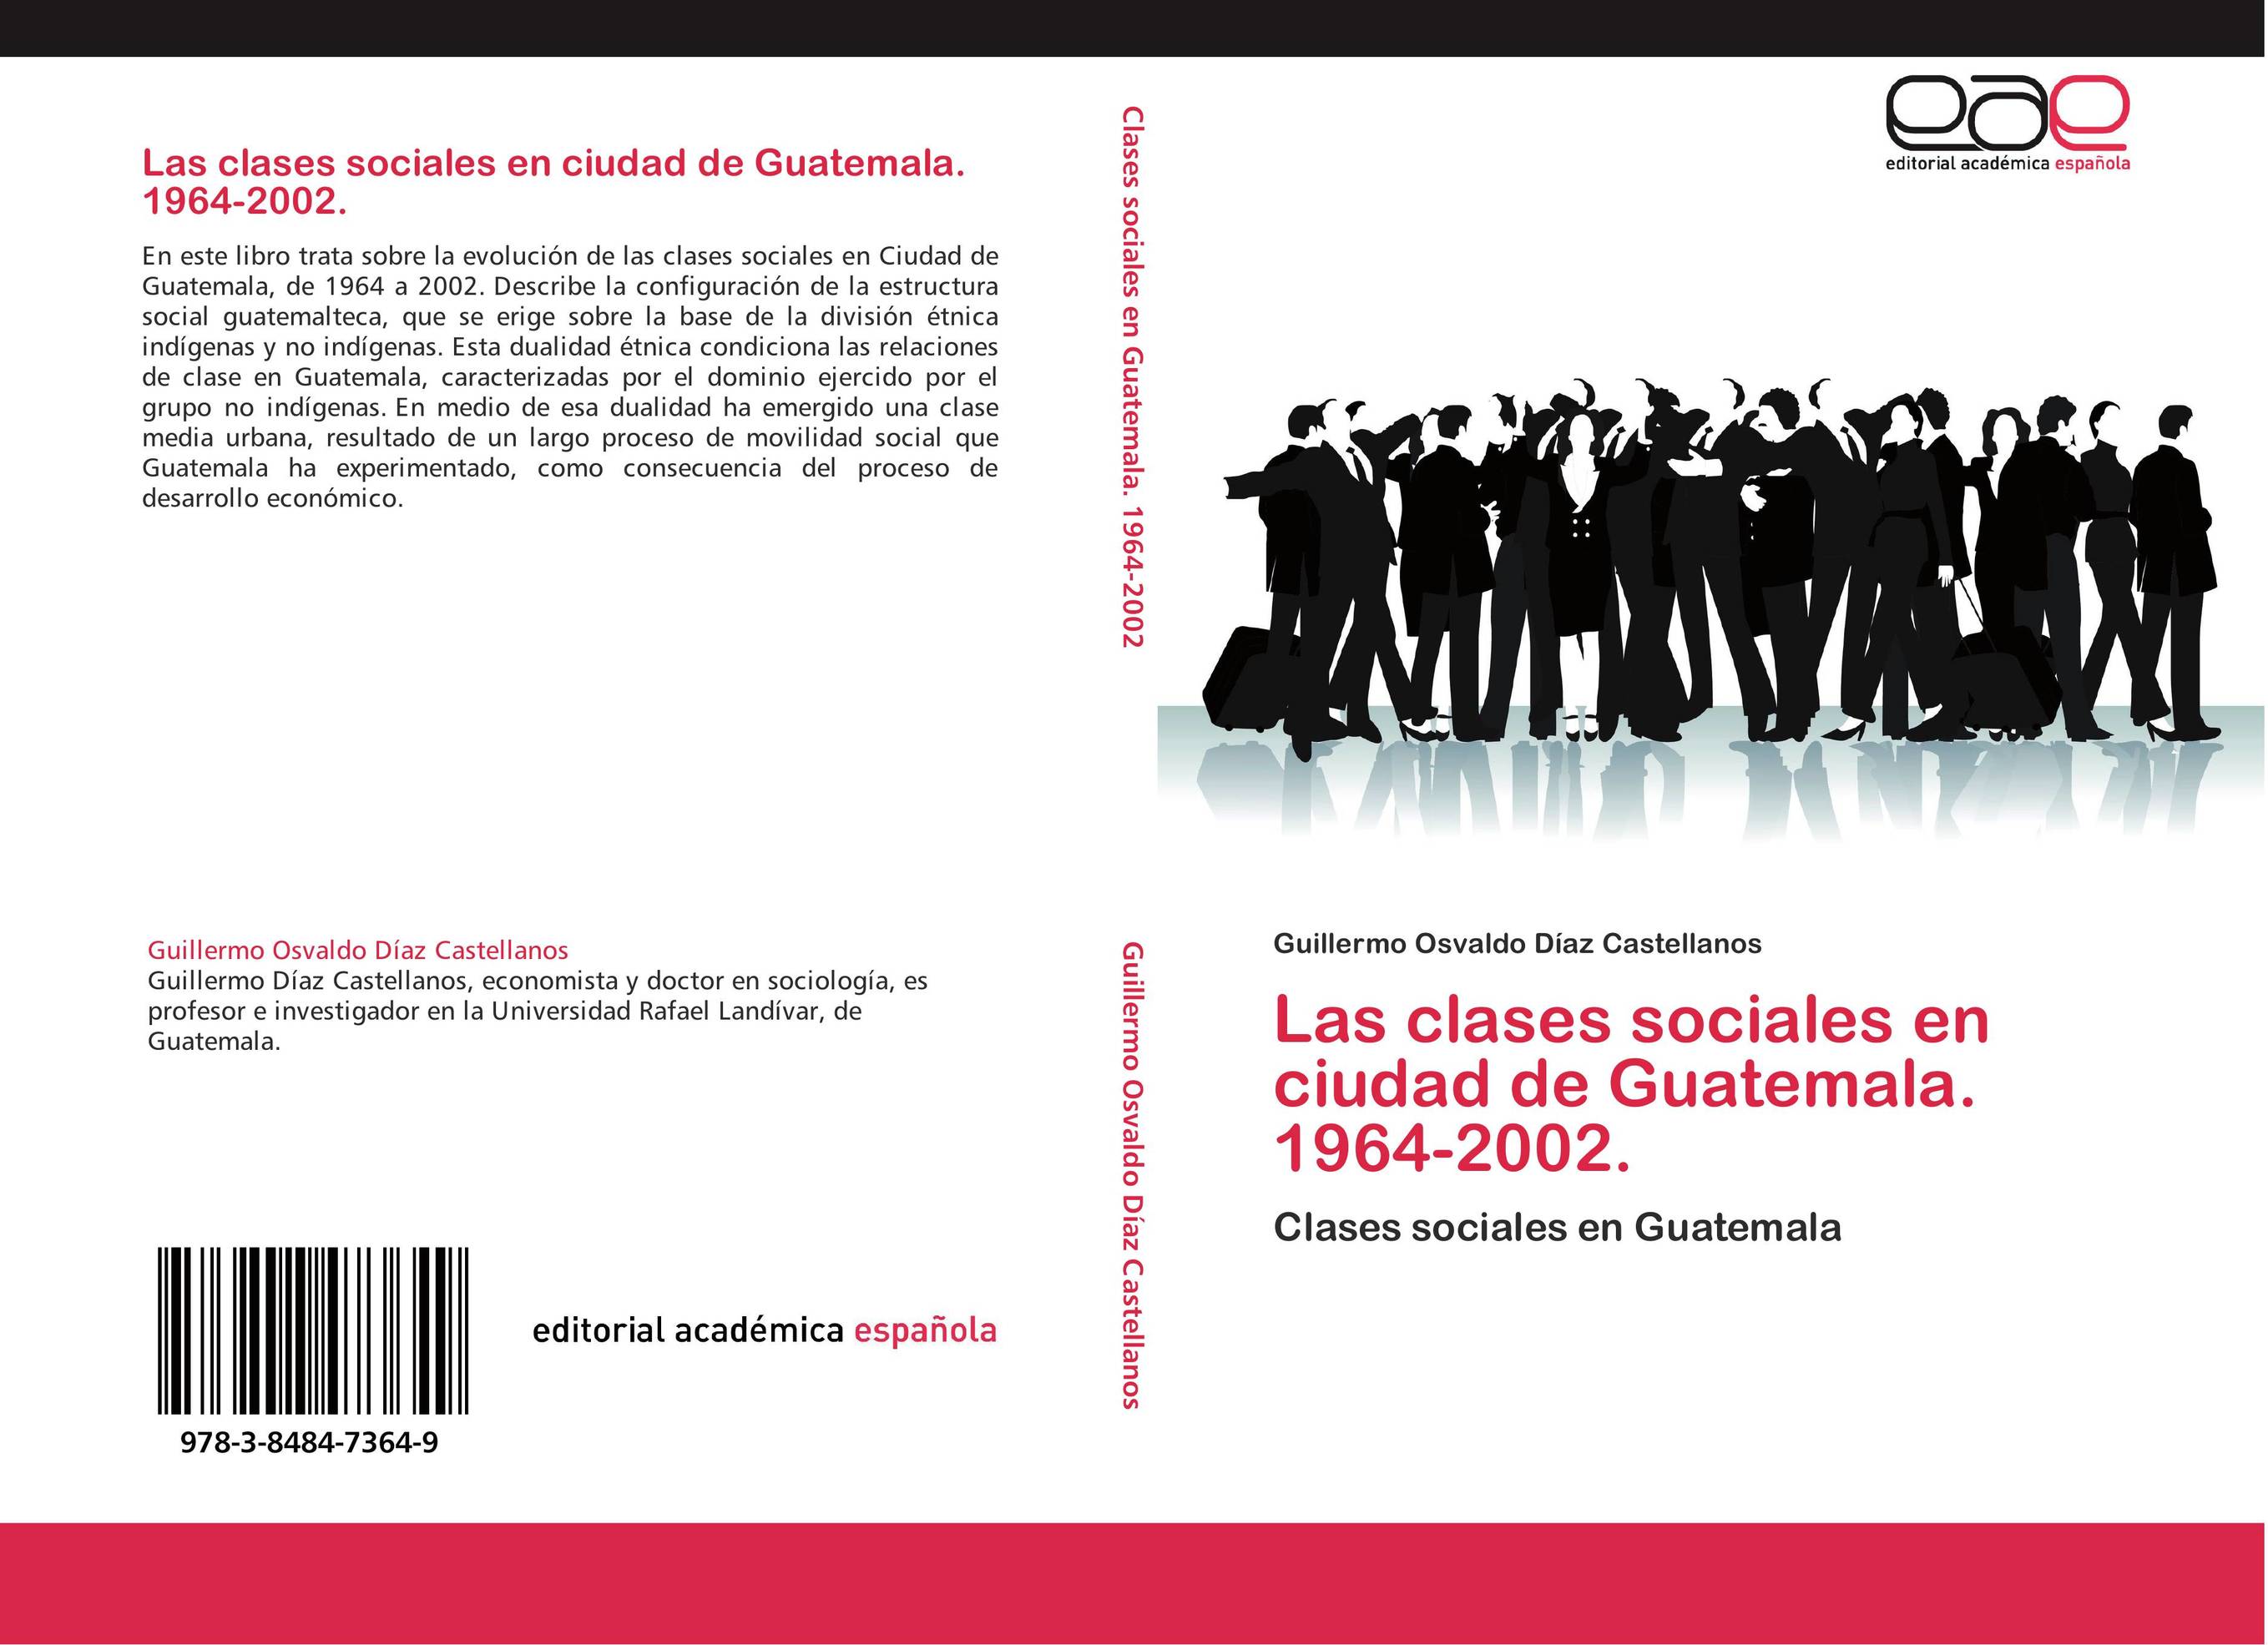 Las clases sociales en ciudad de Guatemala. 1964-2002.